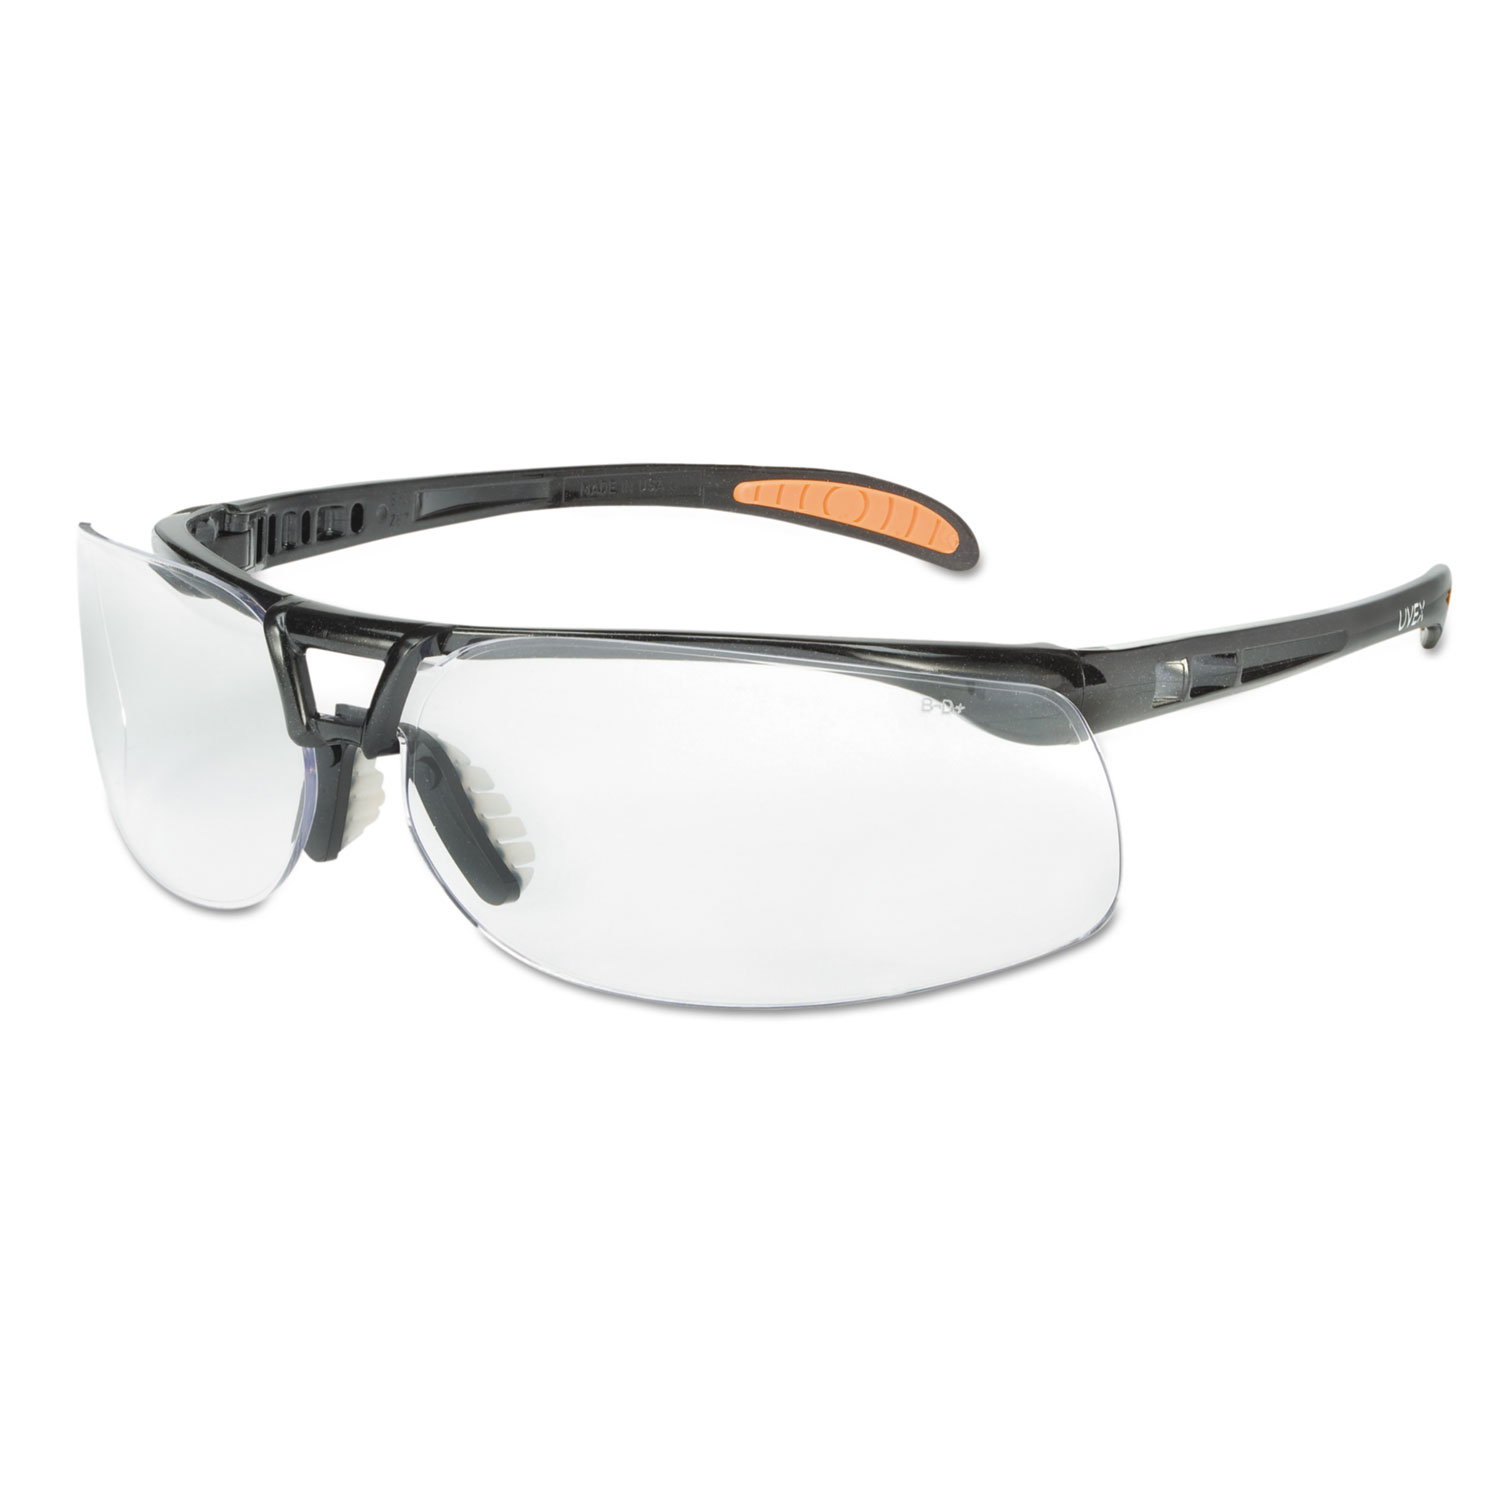 Protege Safety Glasses, UV Extra AF Coated Clear Lens